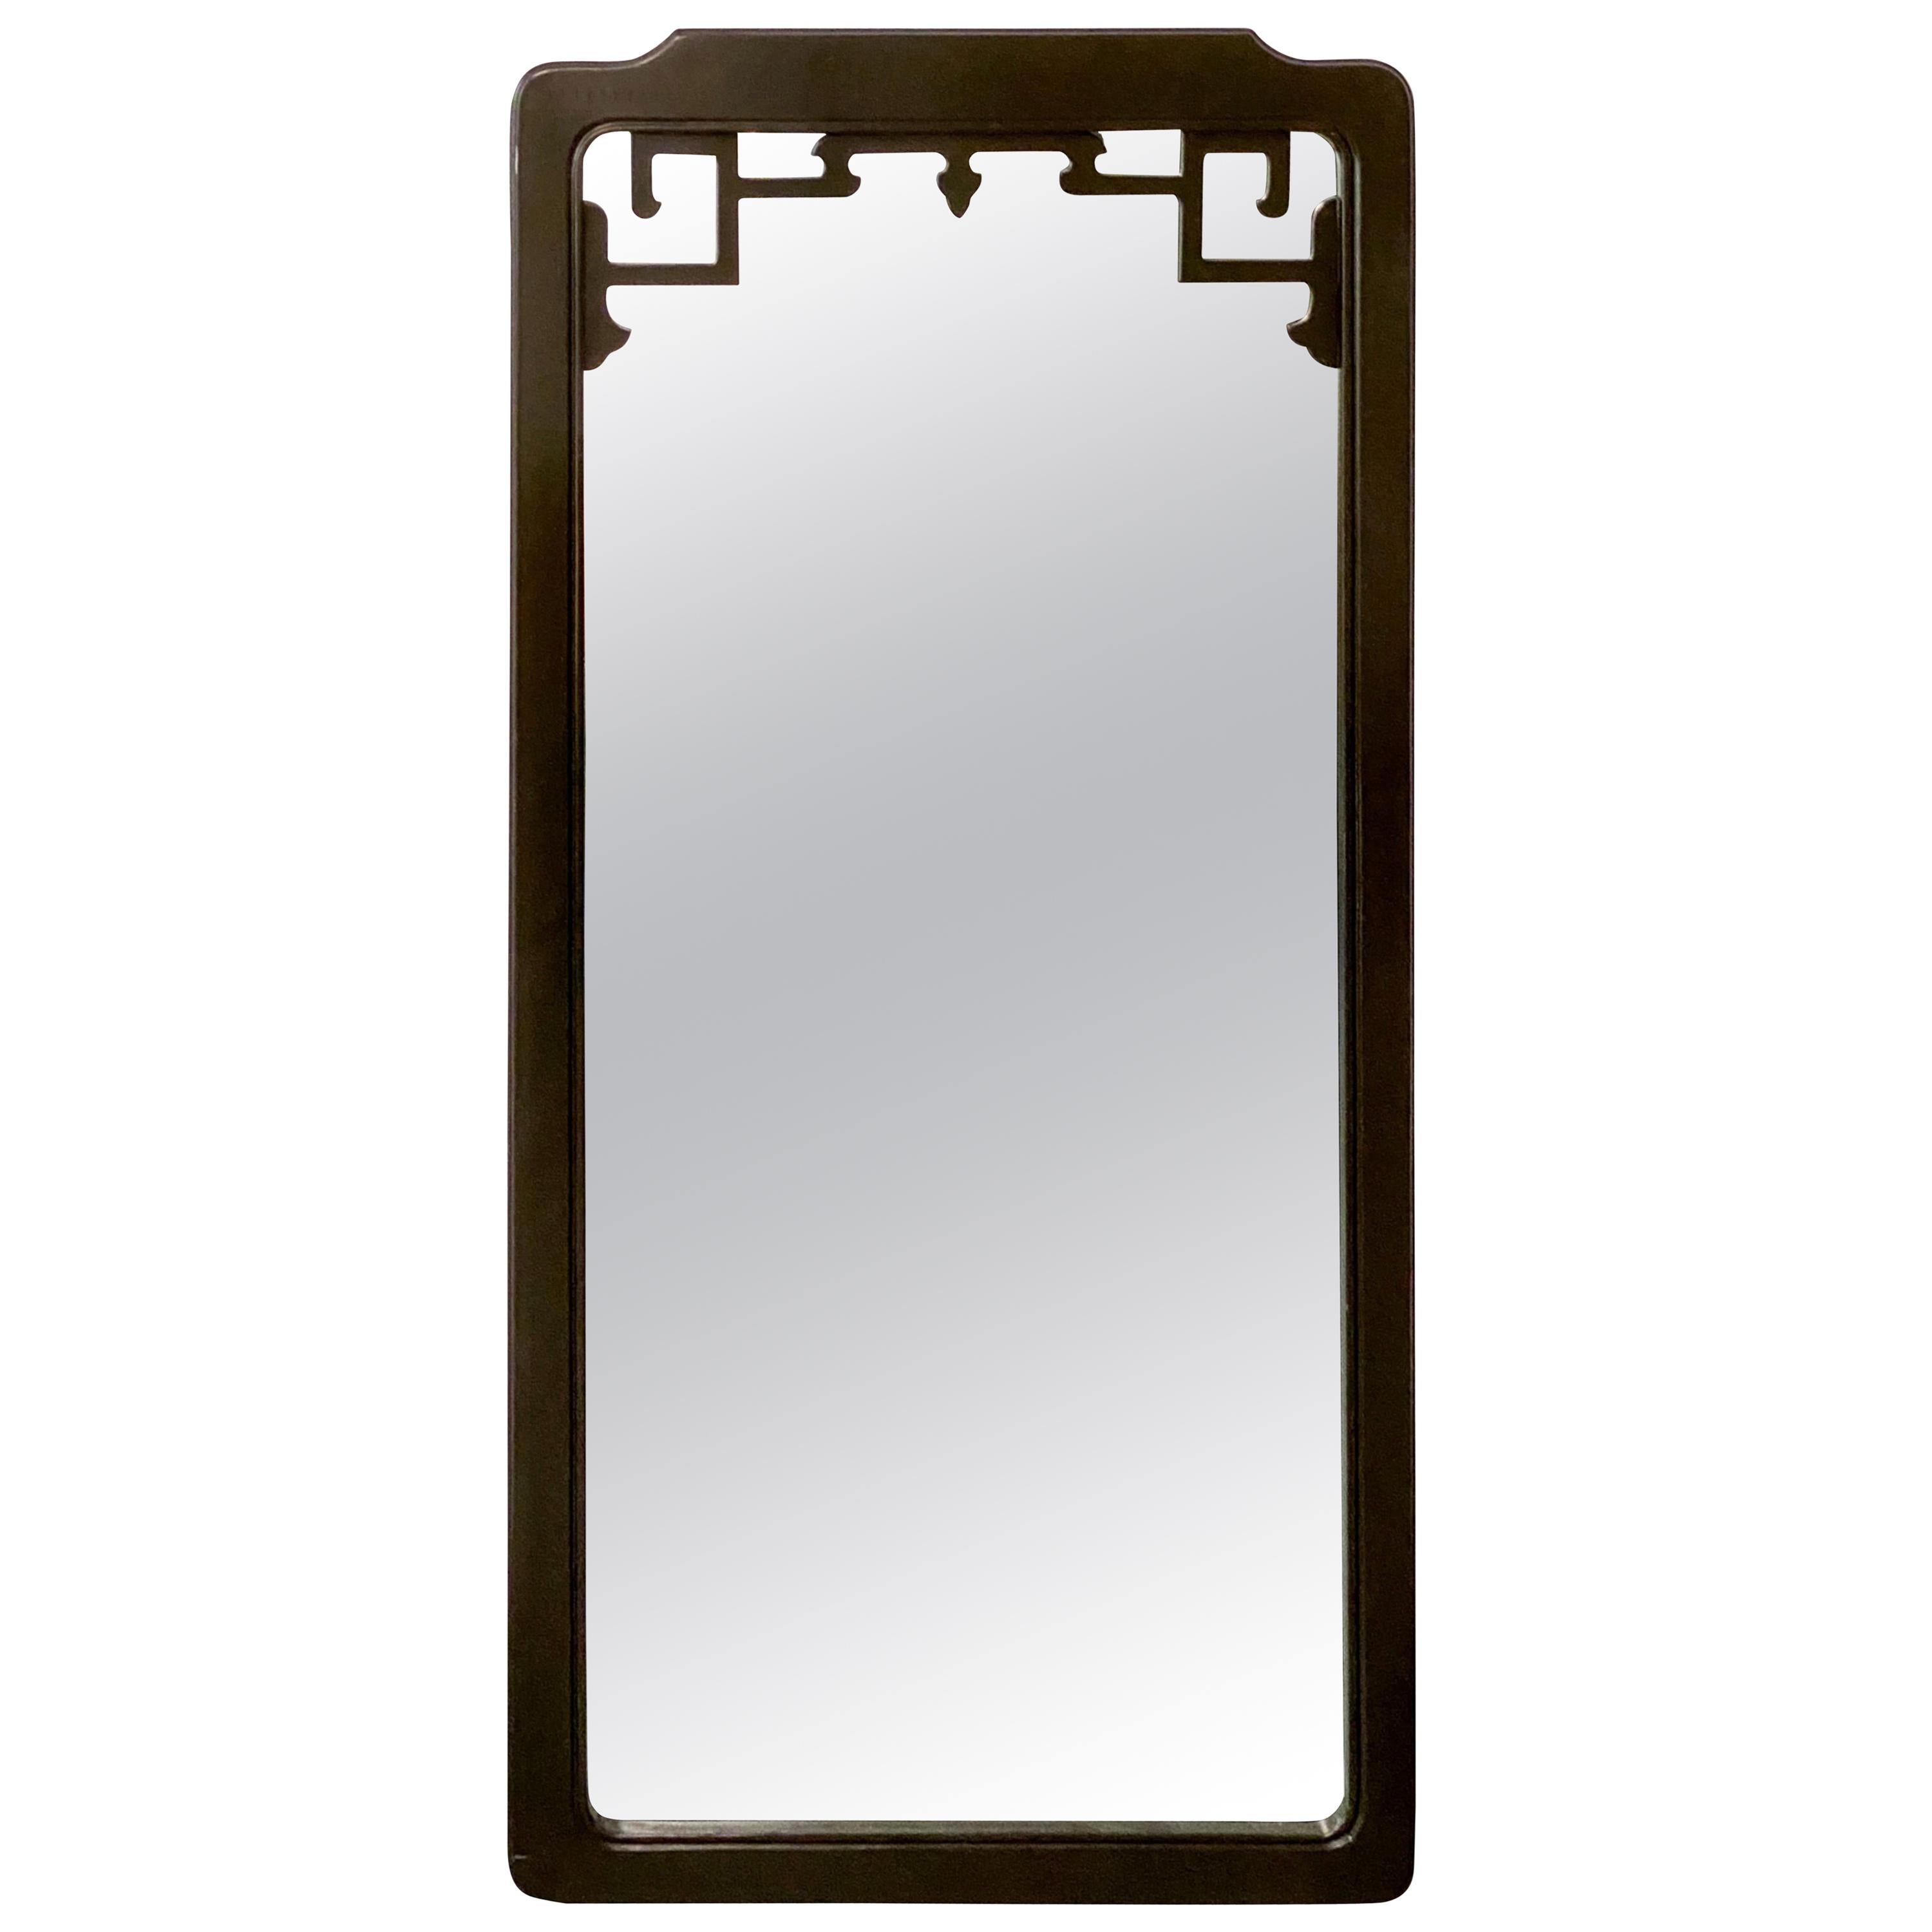 Chinoiserie Ebonized Frame Mirror